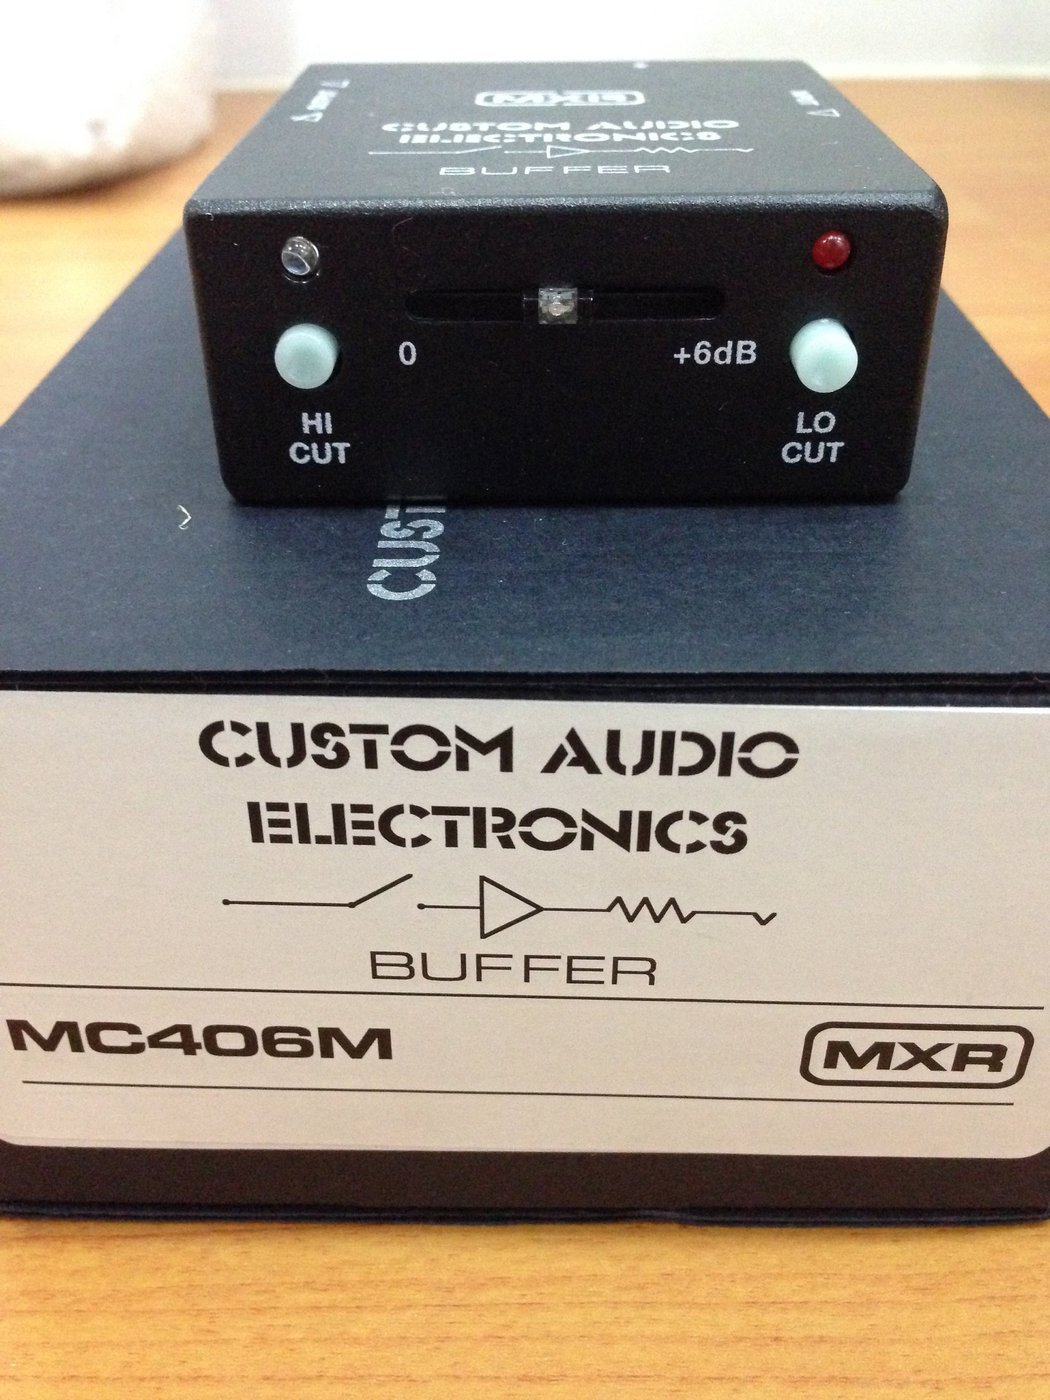 MXR / CUSTOM AUDIO ELECTRONICS MC406M